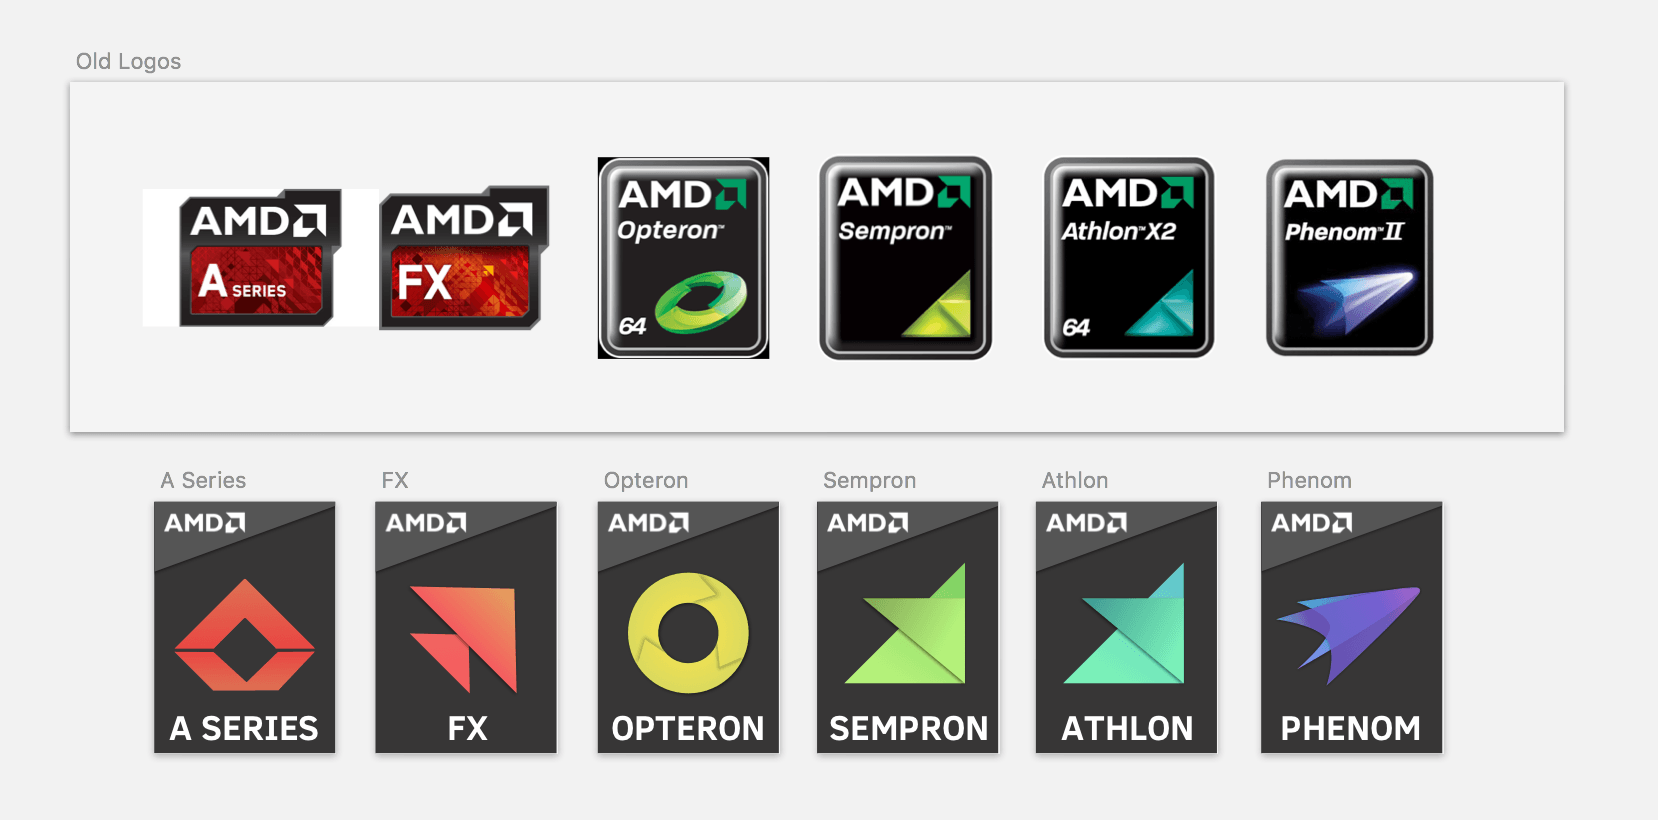 Old AMD Logo - AMD Ryzen Sticker Redesign?